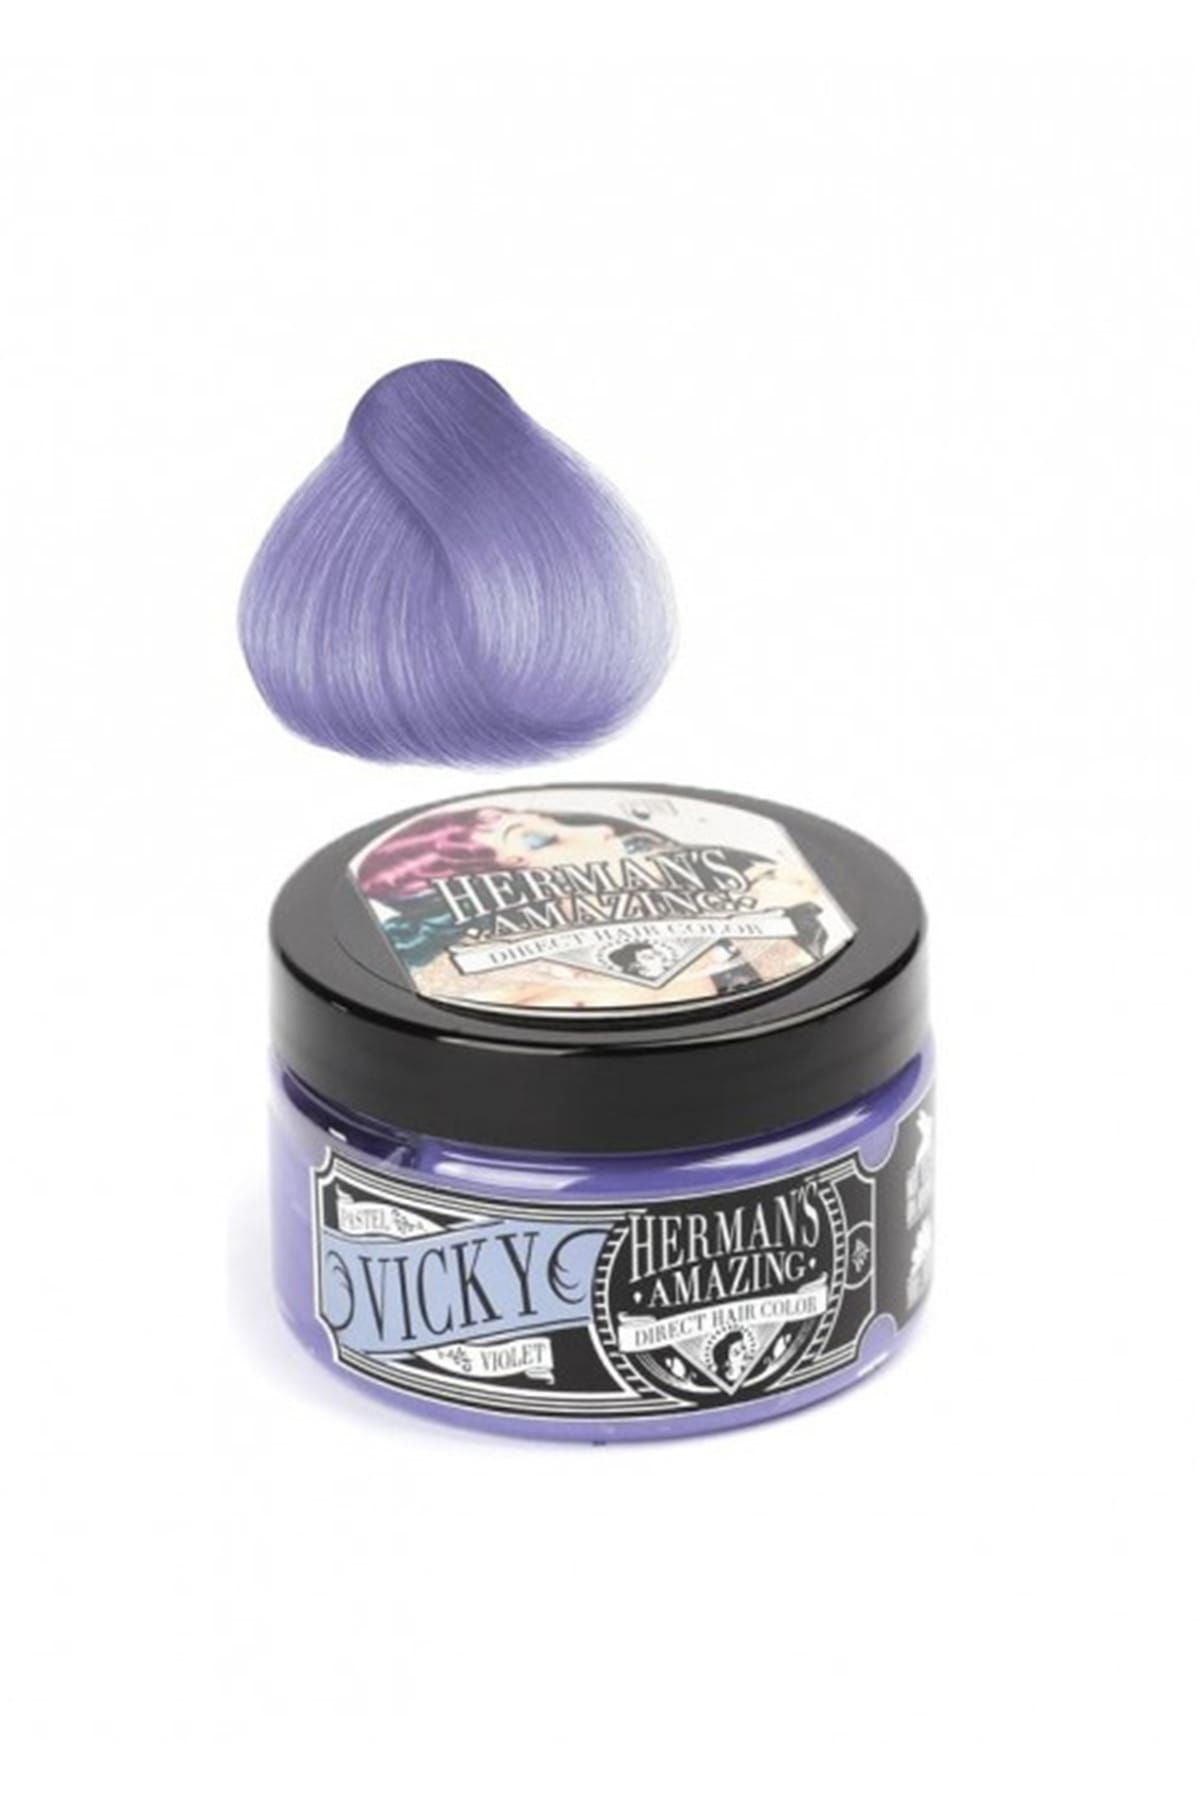 Herman's Amazing Geçici Saç Boyası - Direct Hair Color Vicky Pastel Viyole 115 ml 6438278930165